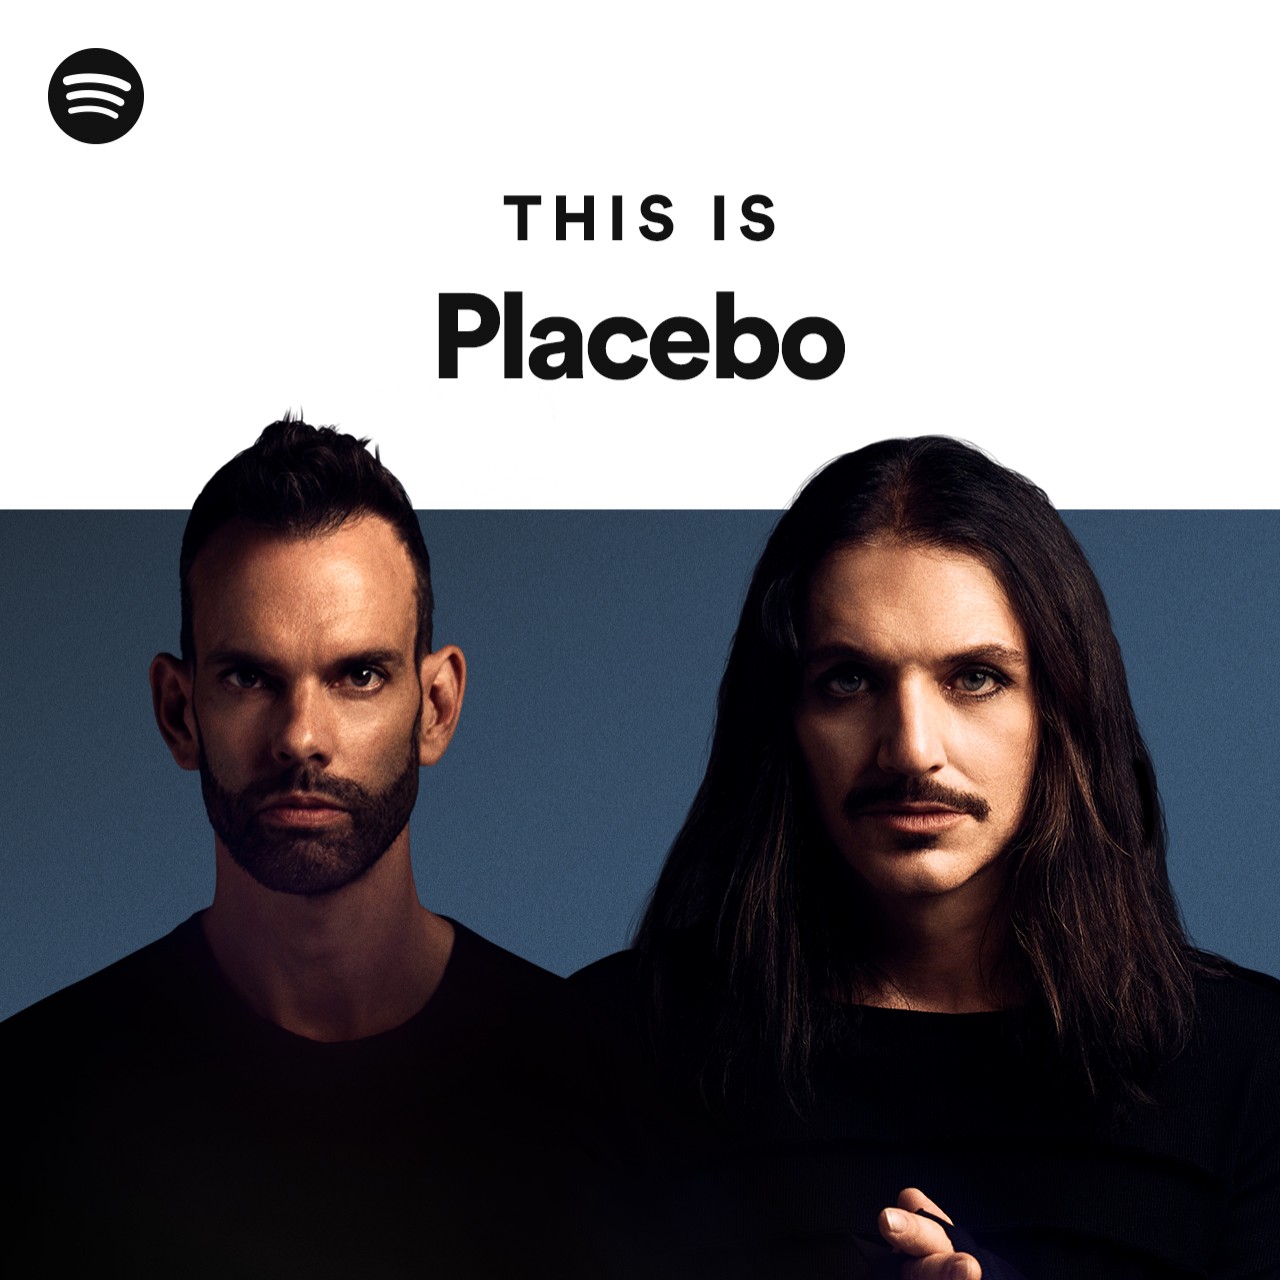 Placebo The placebo